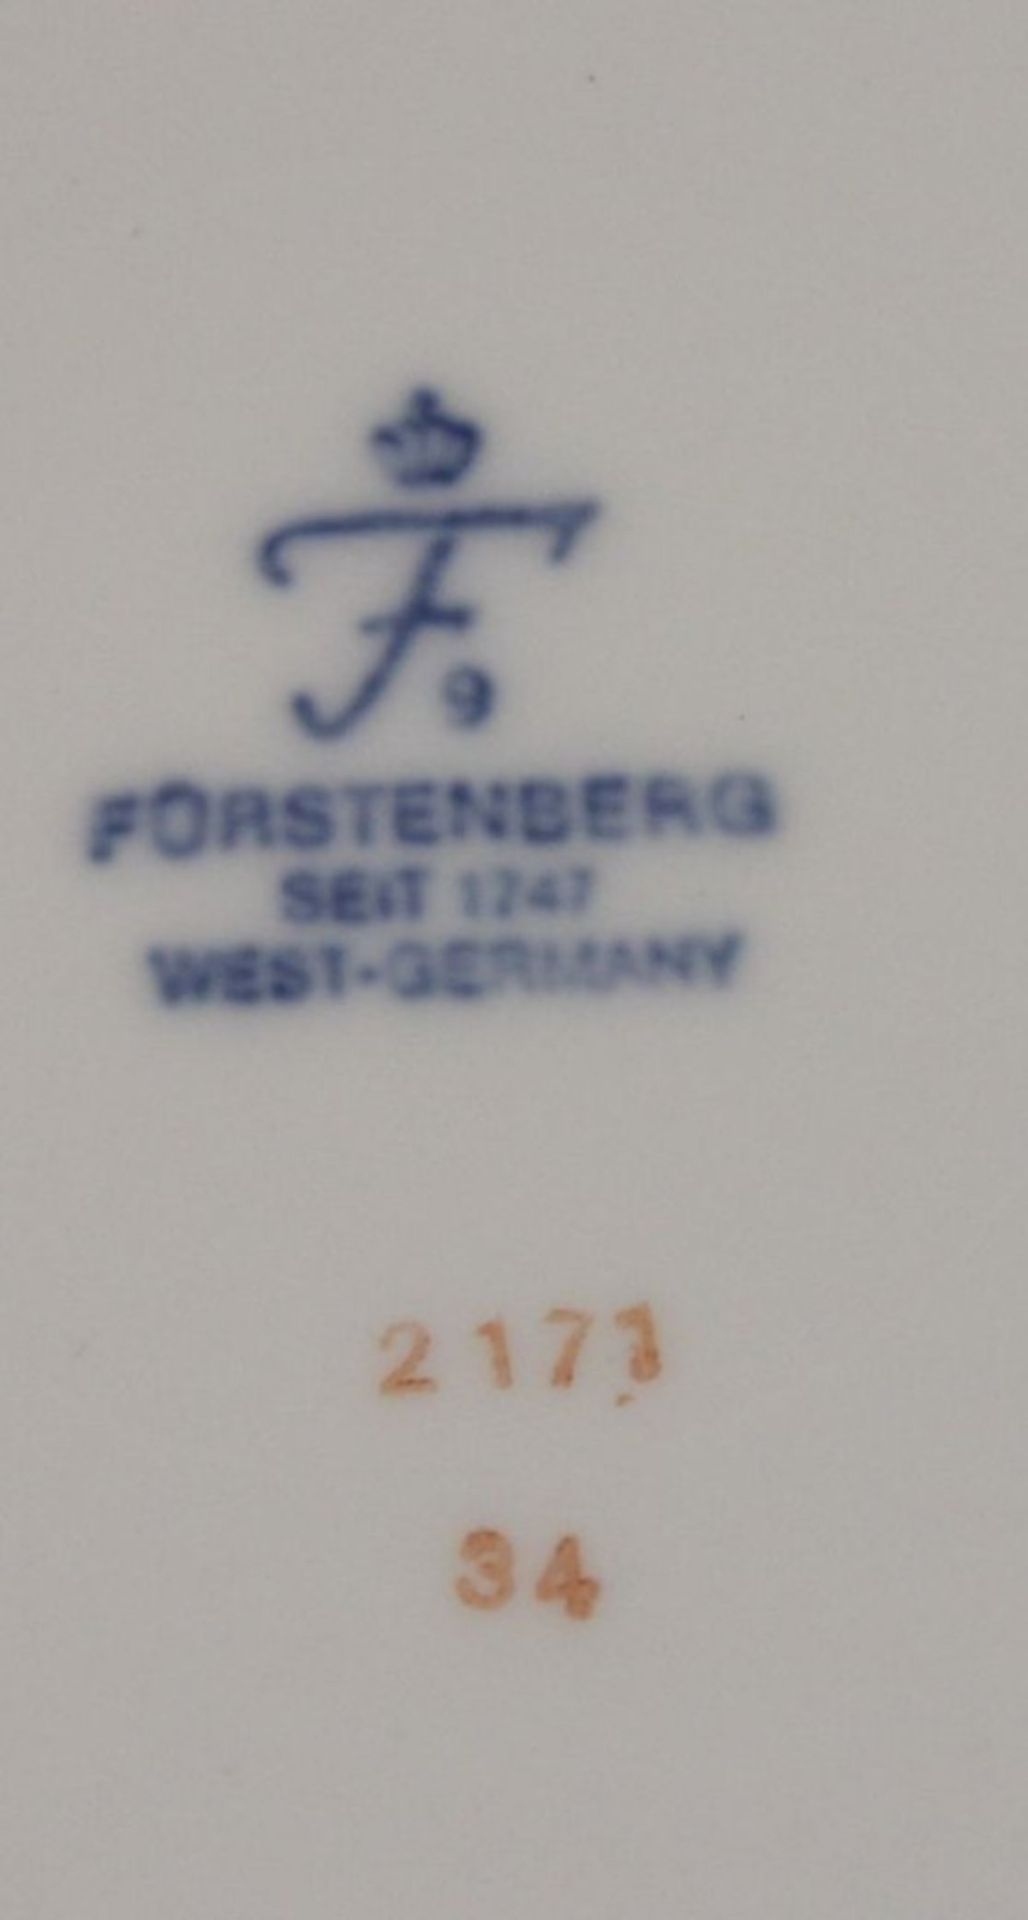 44 Serviceteile, Fürstenberg, Rosenbemalung, Kaffeekanne, Milch und Zucker, Leuchter, - Image 5 of 5